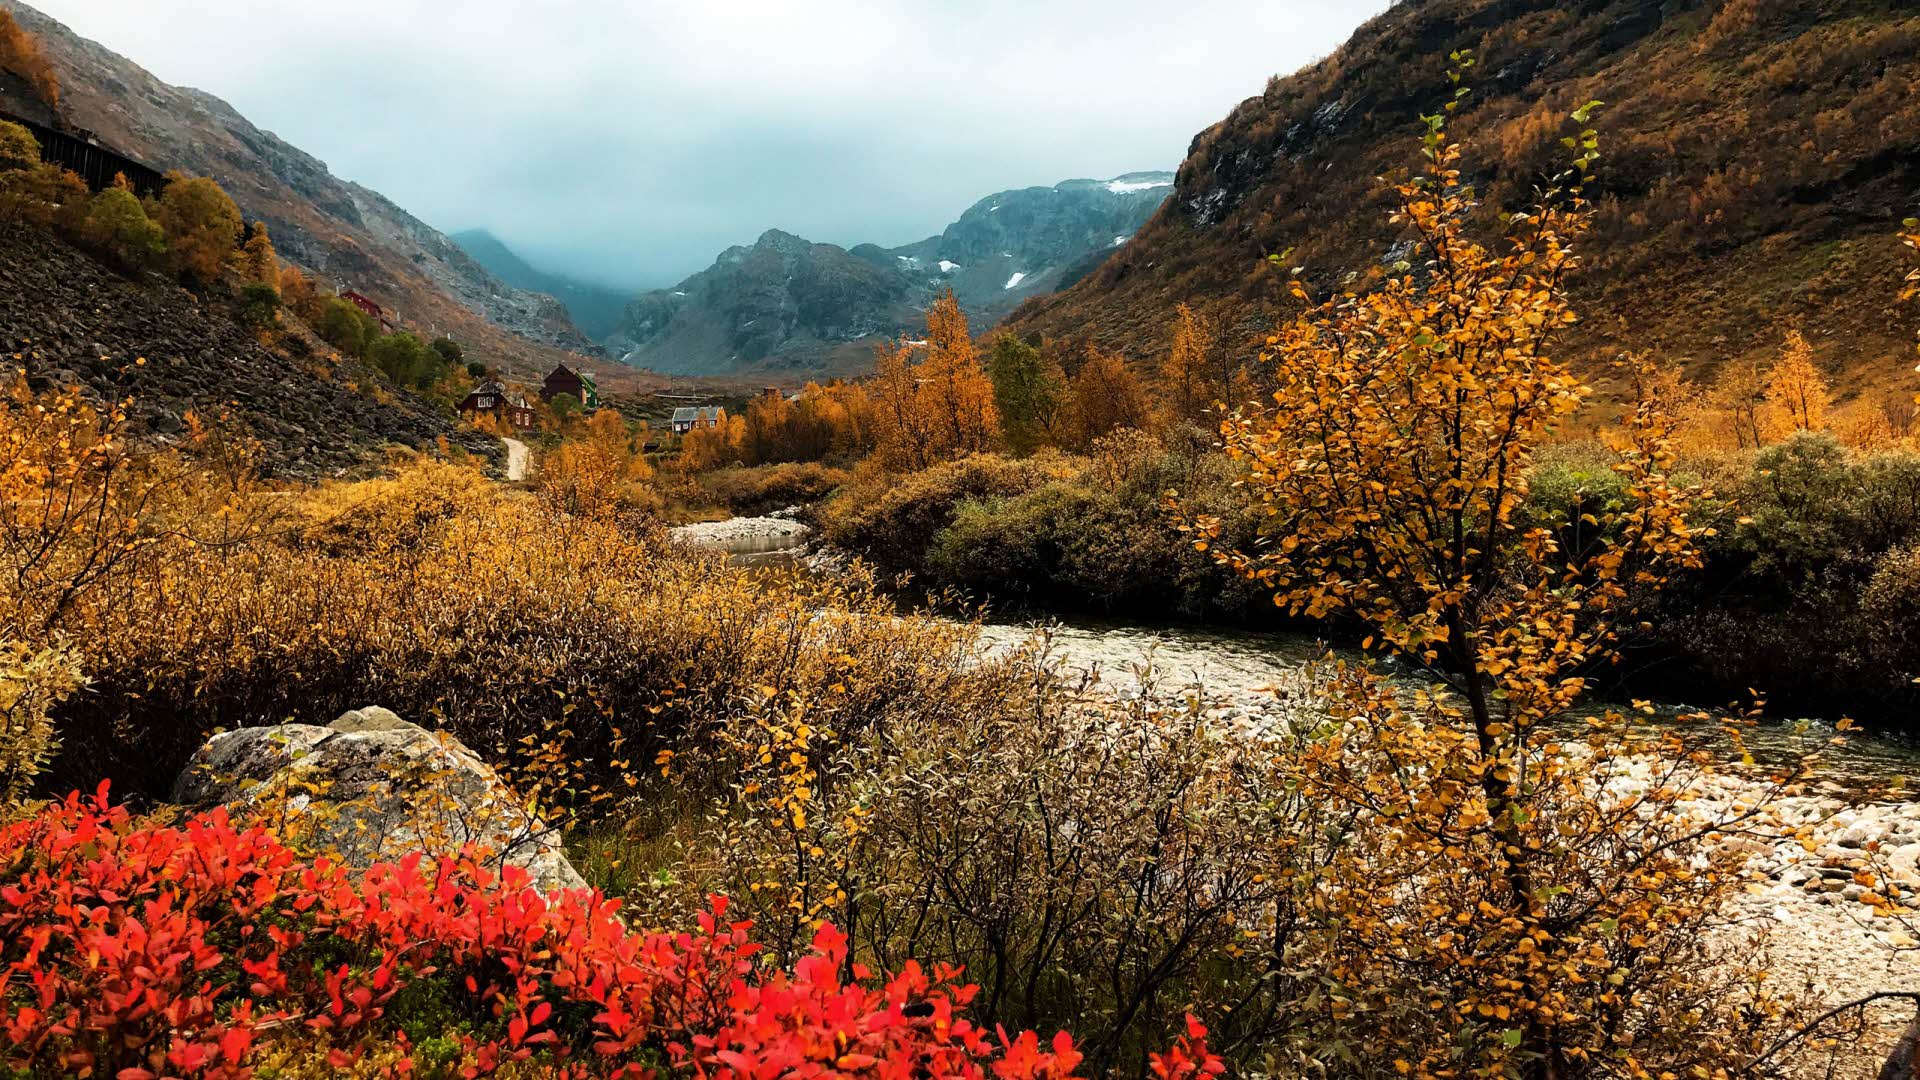 Le rouge vif et le brun de l’automne colorent le sommet de la vallée de Flam et une route de gravier serpente entre les montagnes